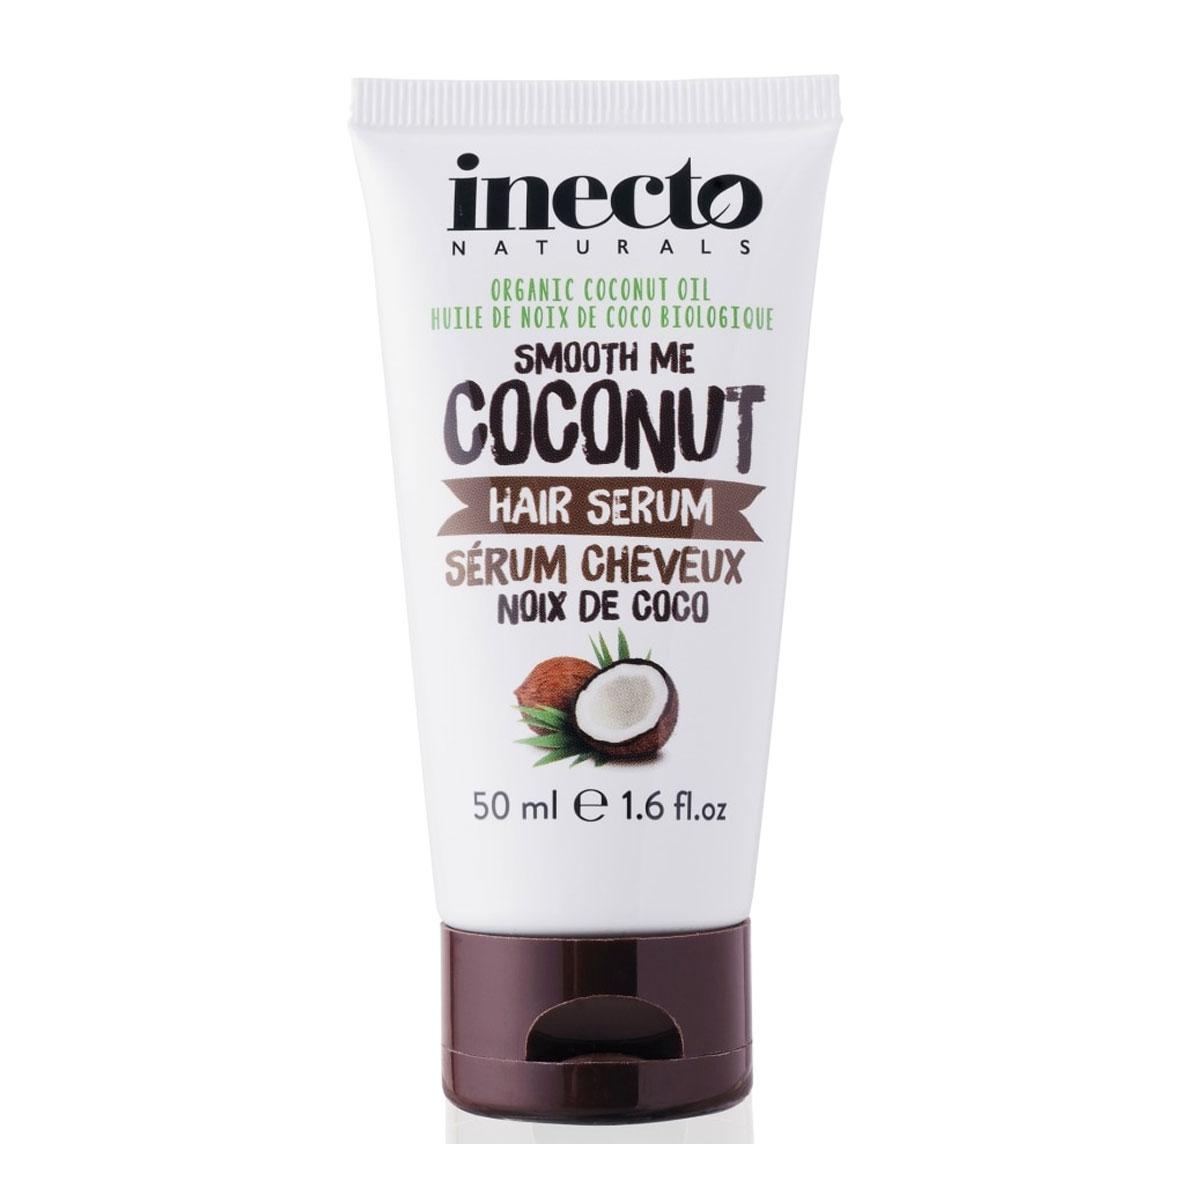 سرم موى نارگیل  - Coconut hair serum